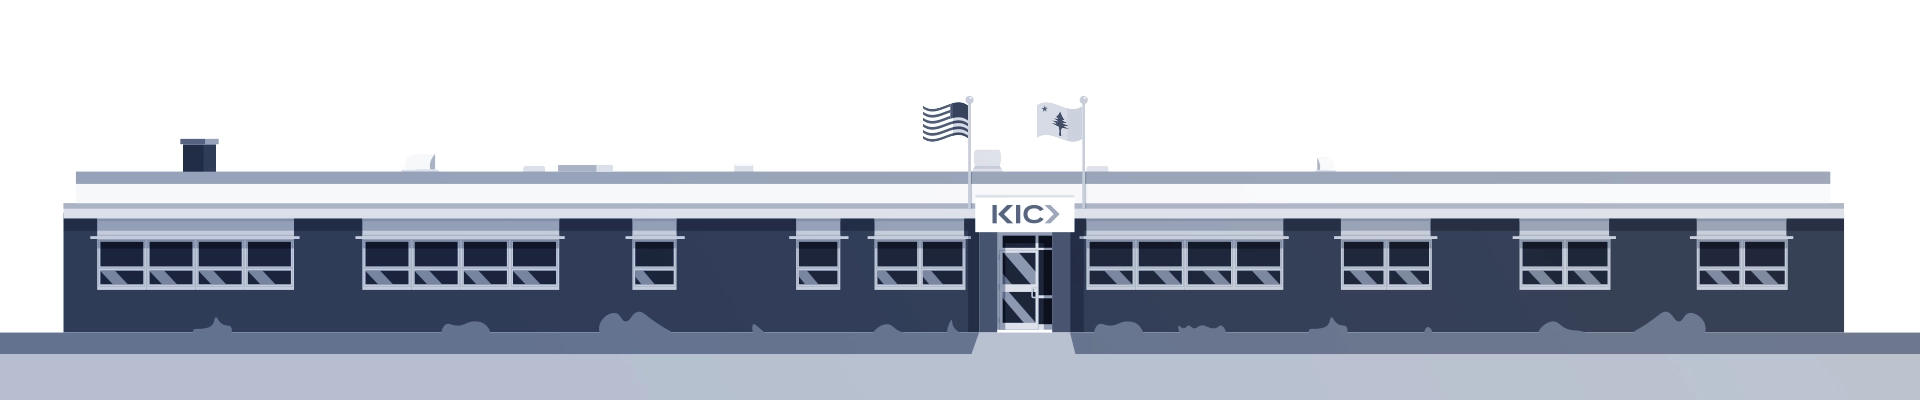 Company: About KIC